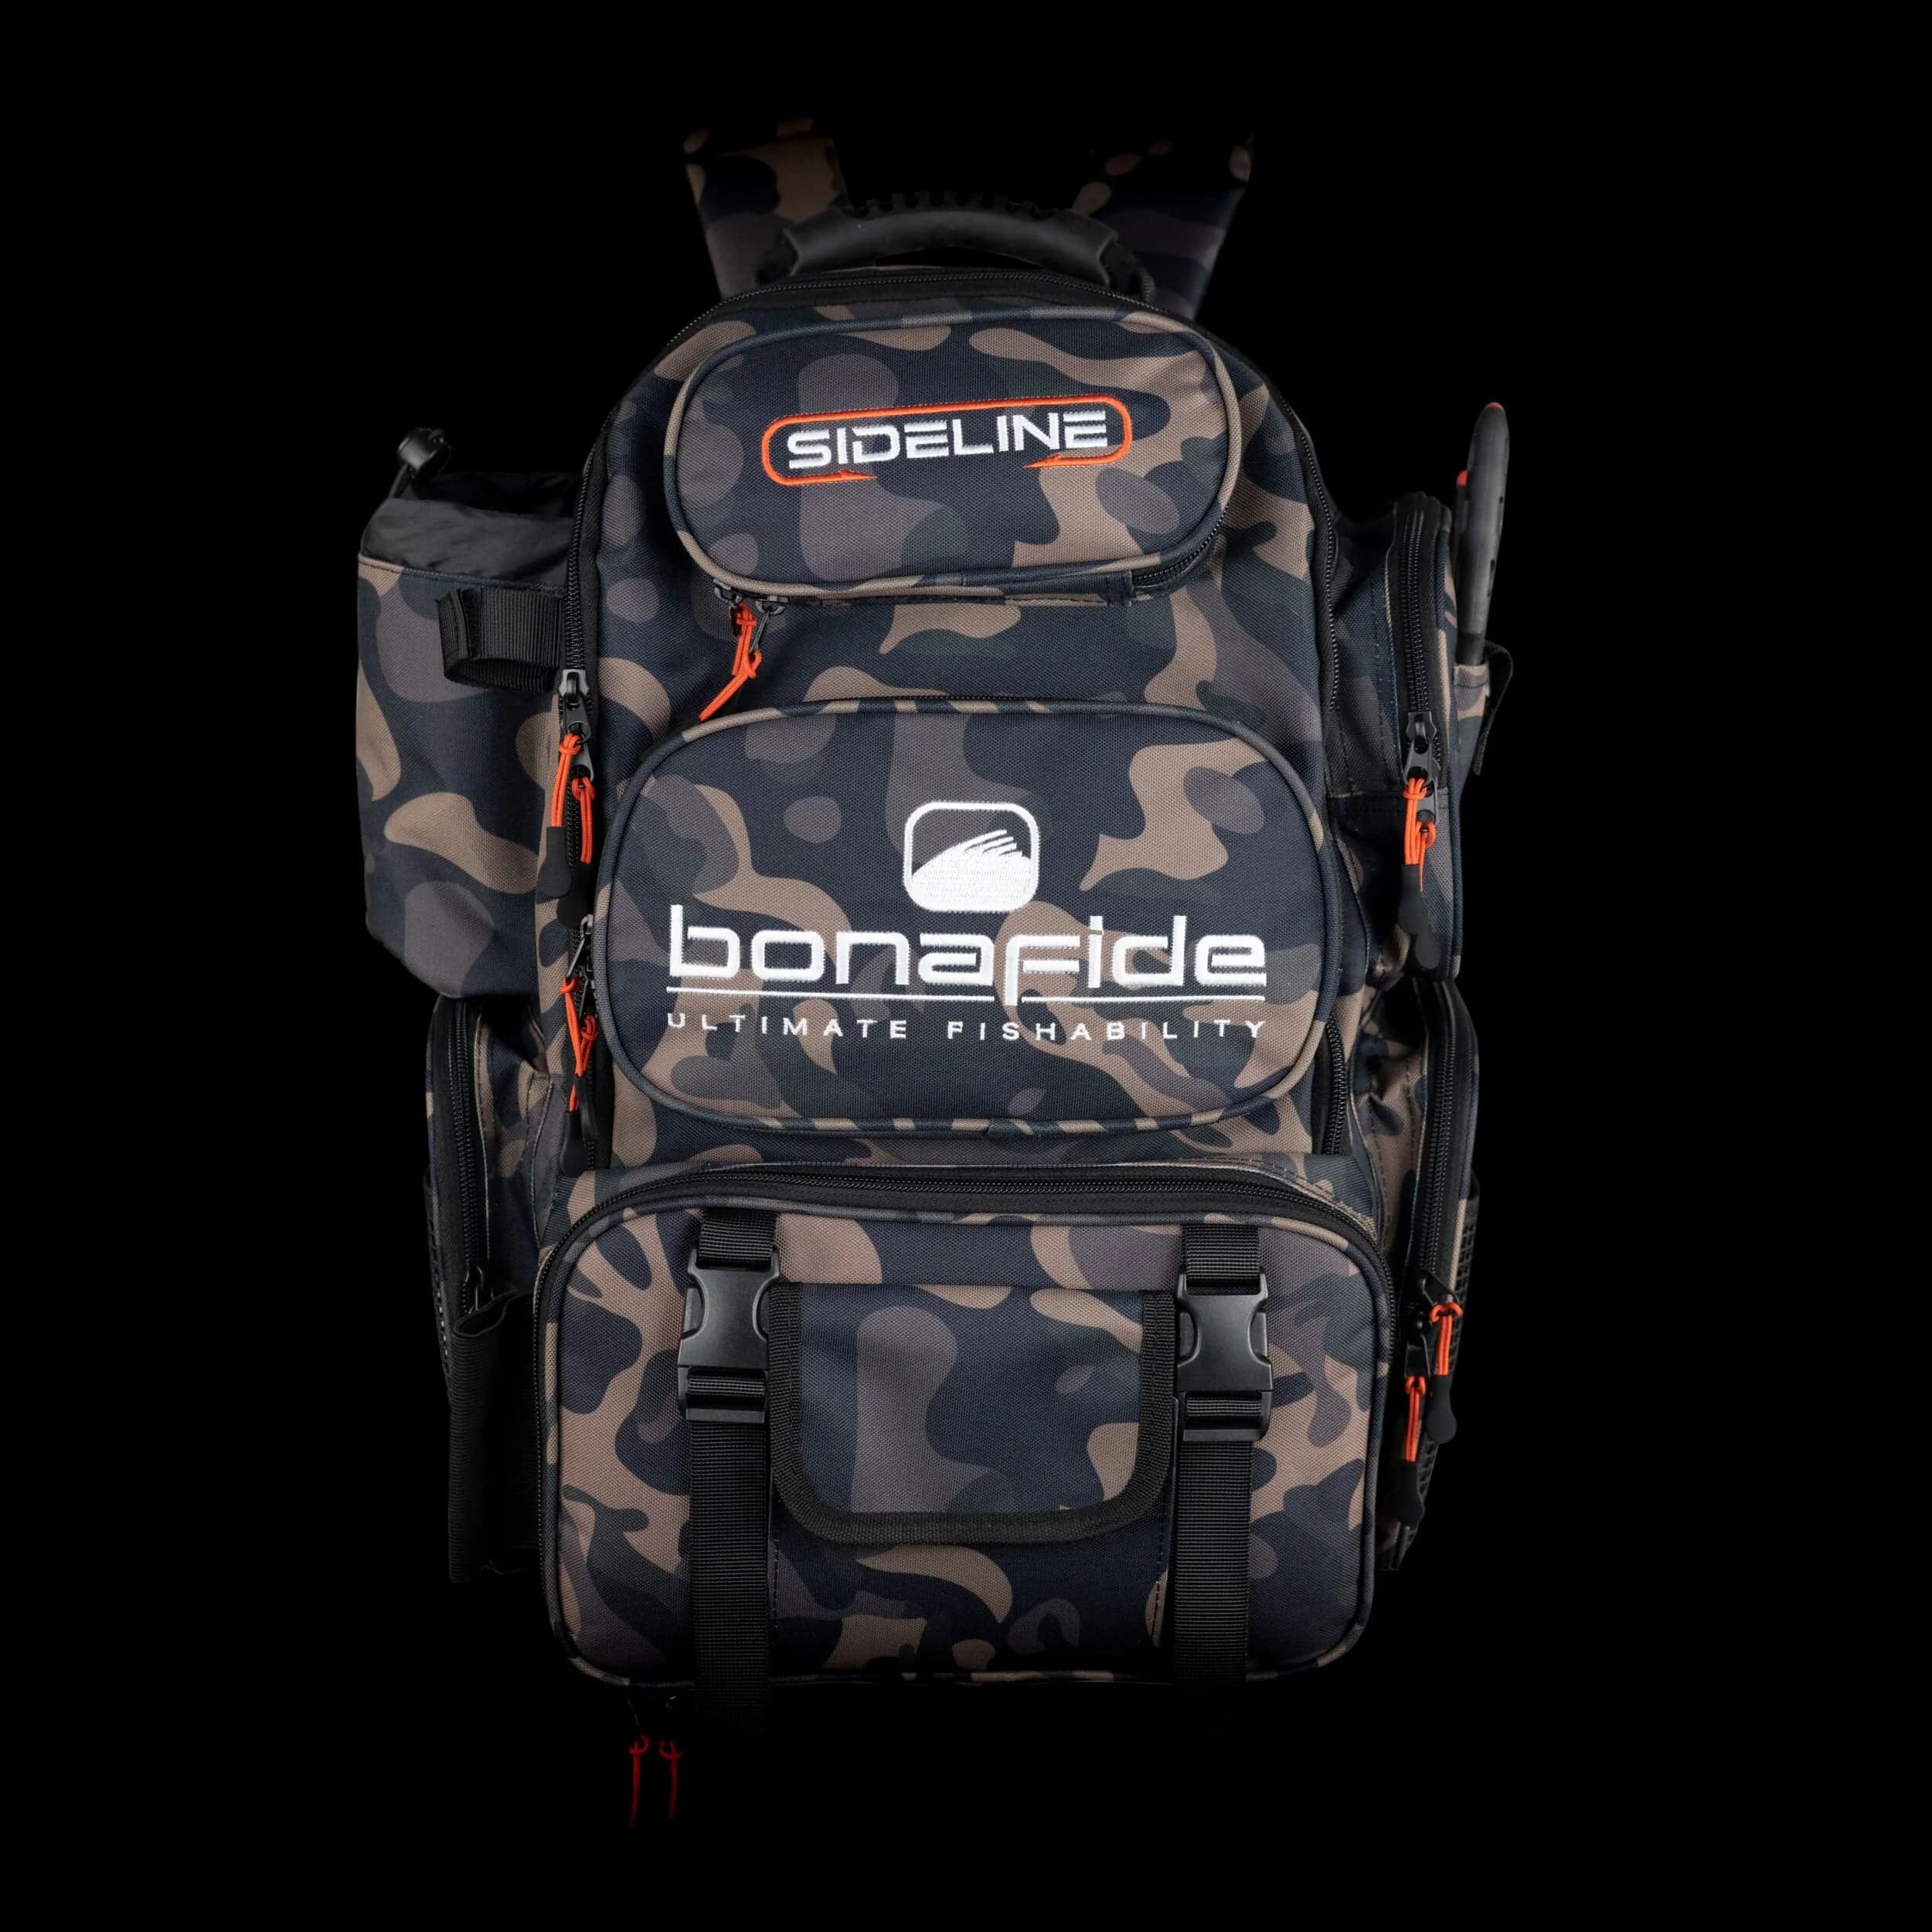 Bonafide Sideline Fishing Backpack